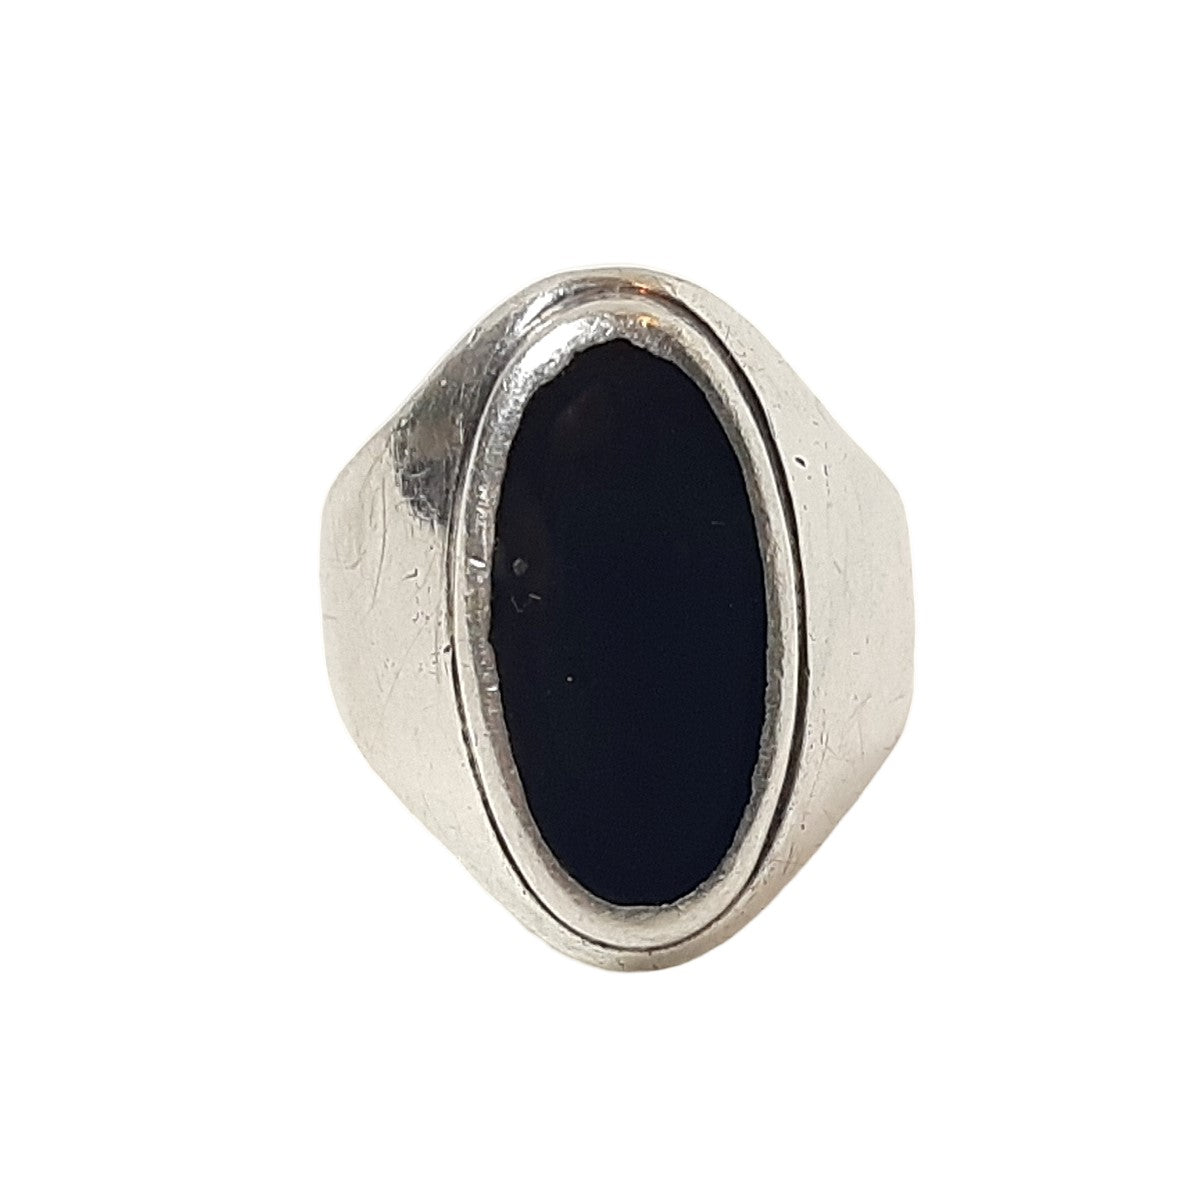 ヴィンテージ シルバー925 ブラックオニキス リング 20号11.9g / Vintage Sterling Silver Black Onyx Ring